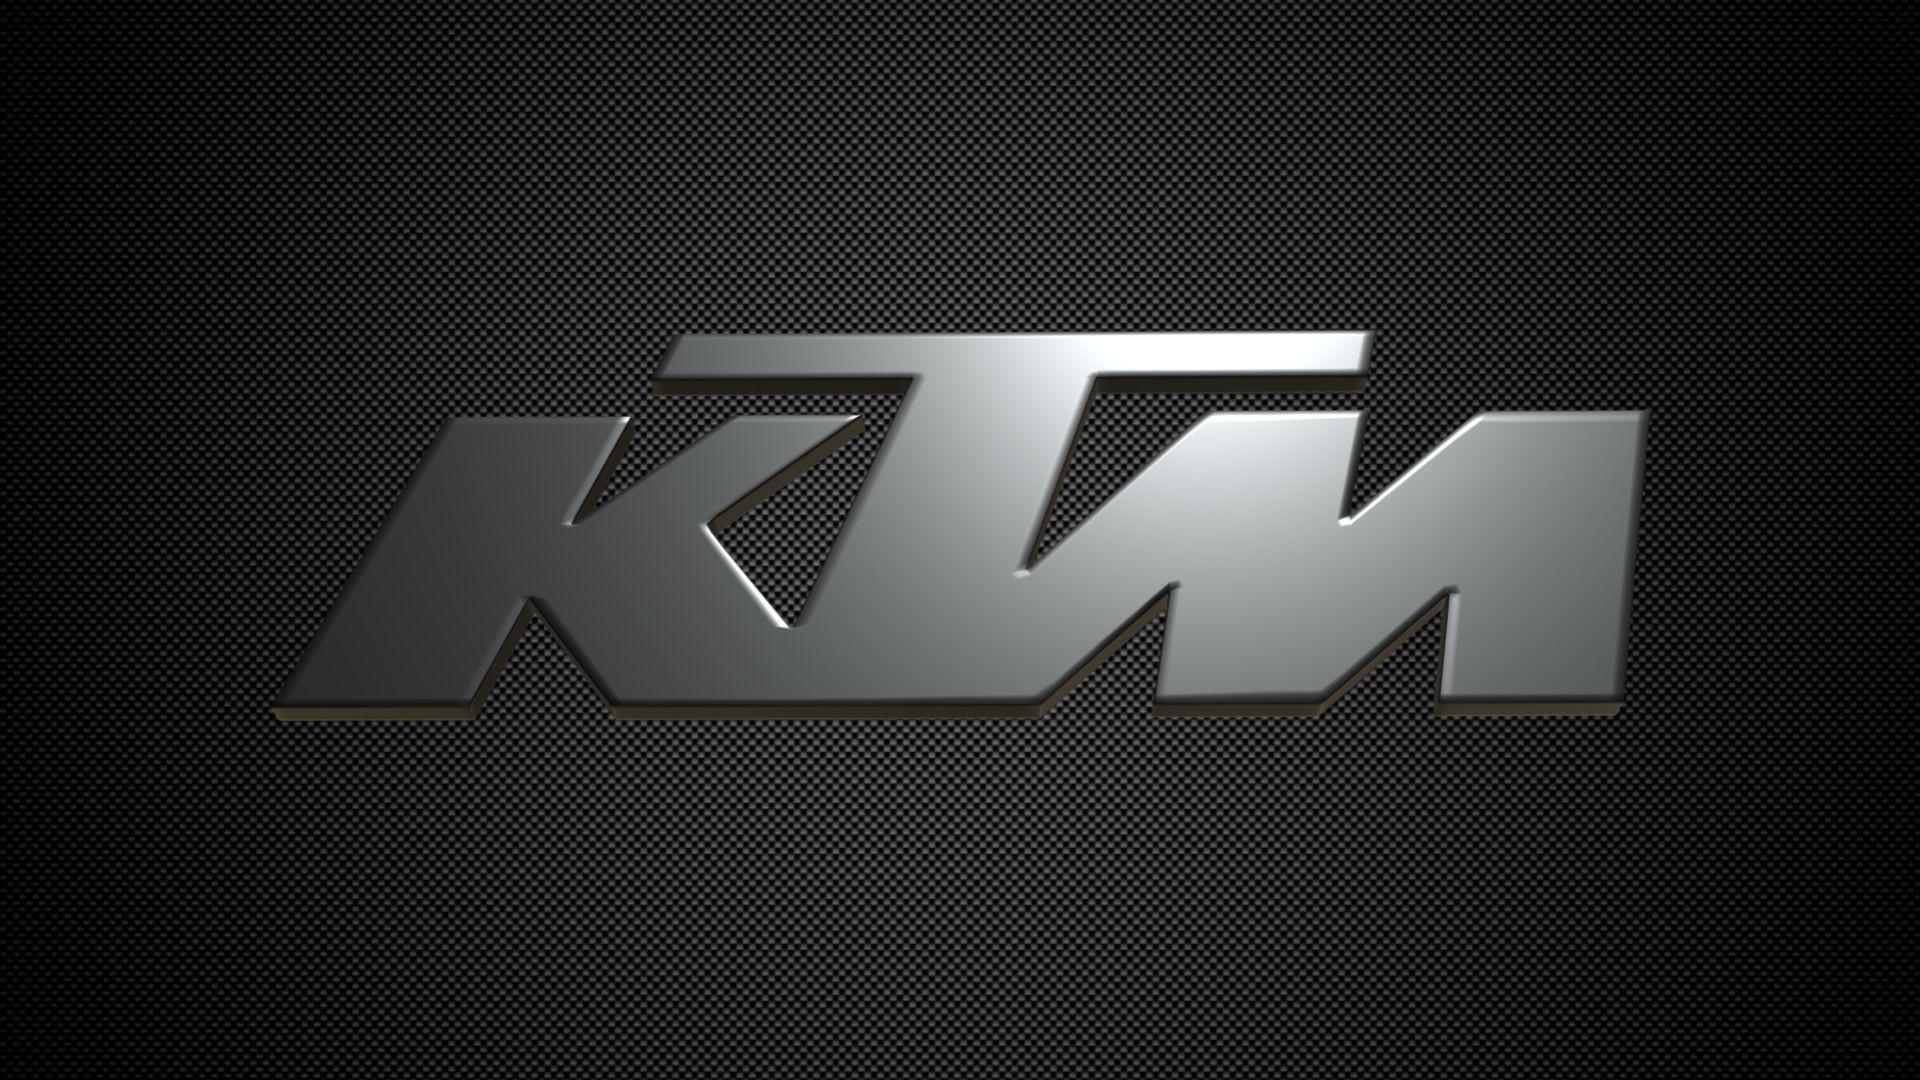 Ktm Logo Wallpaper